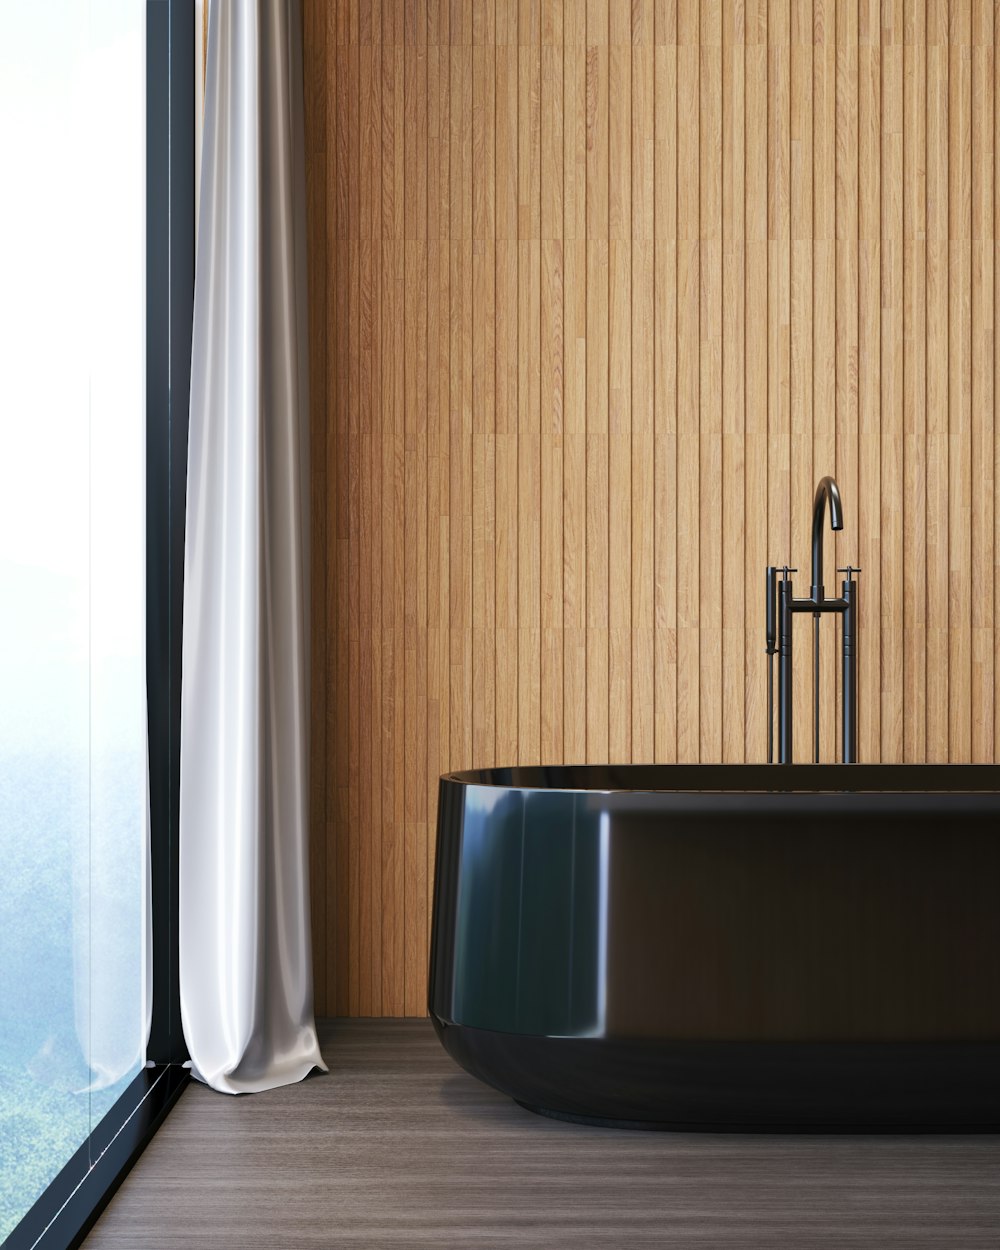 a black bath tub sitting next to a window